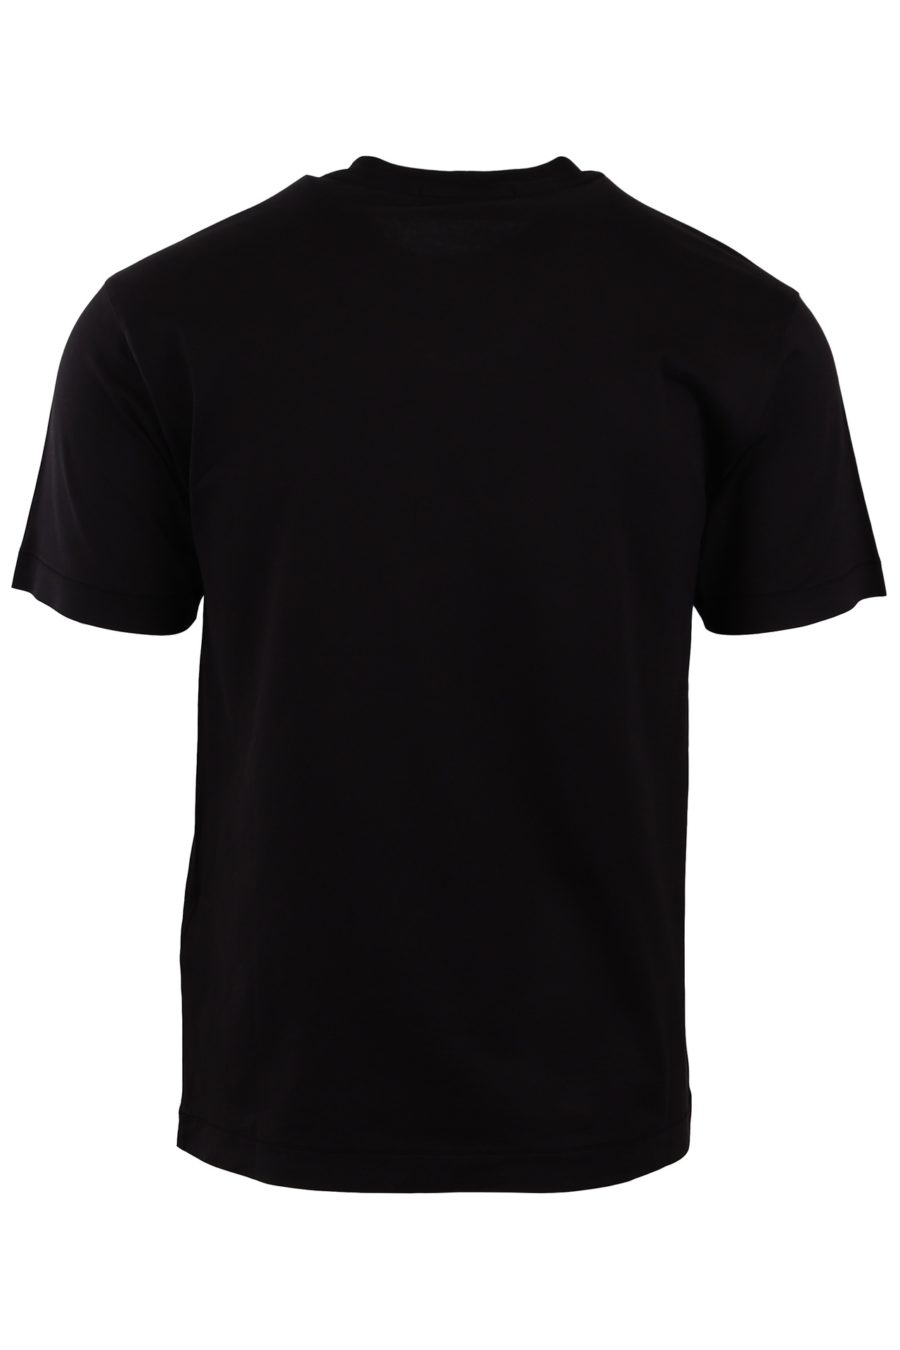 Stone Island black T-shirt with logo patch - acdc5929418009adbdda4a7ecba1b7730397024d 1